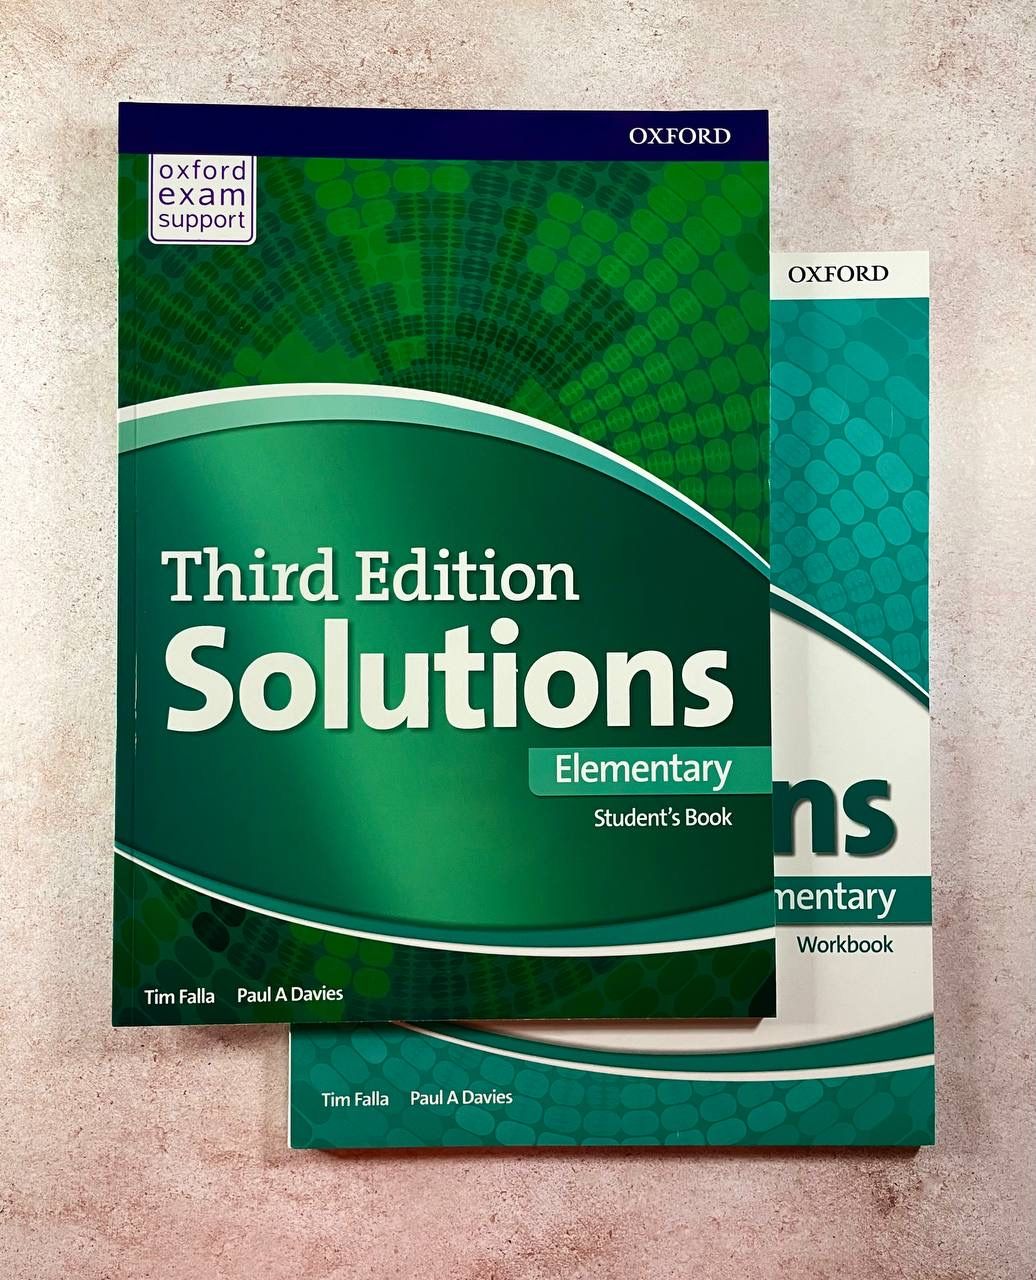 Учебник solutions Elementary. Учебники third Edition solutions Elementary Workbook. Solutions Elementary Workbook гдз. Solutions Elementary student's book.